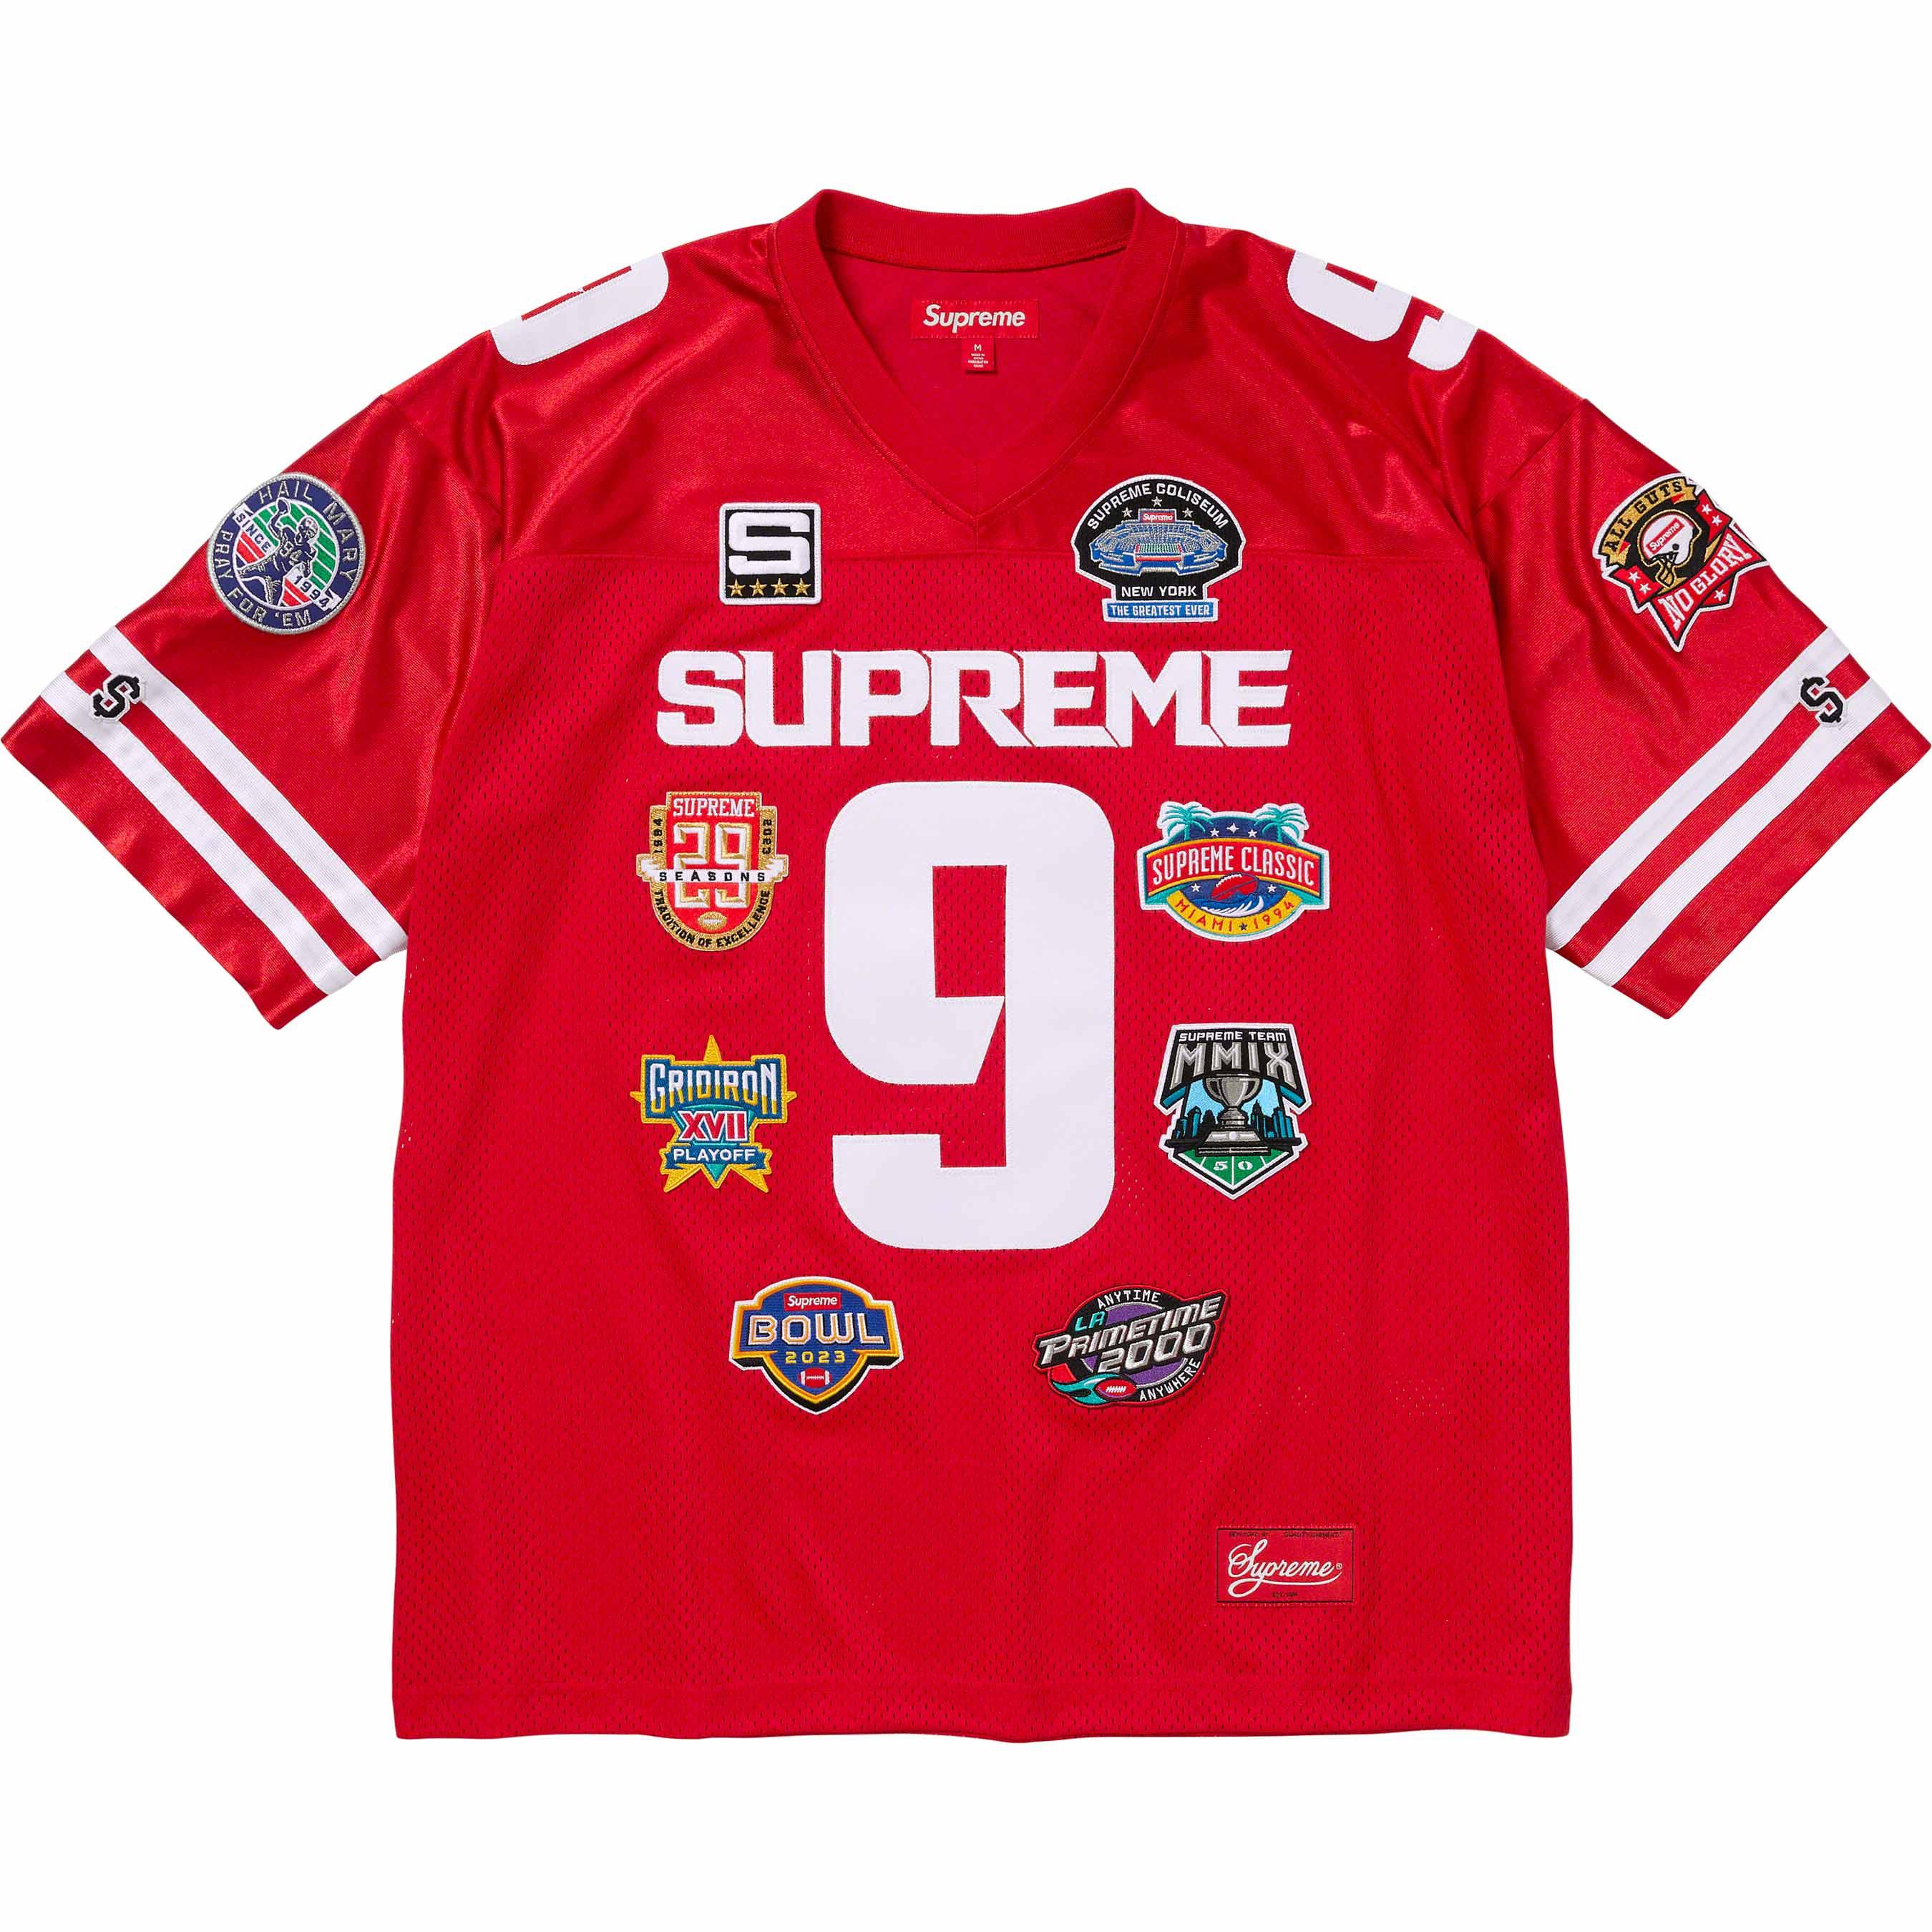 Supreme 14ss championshipfootball jersey